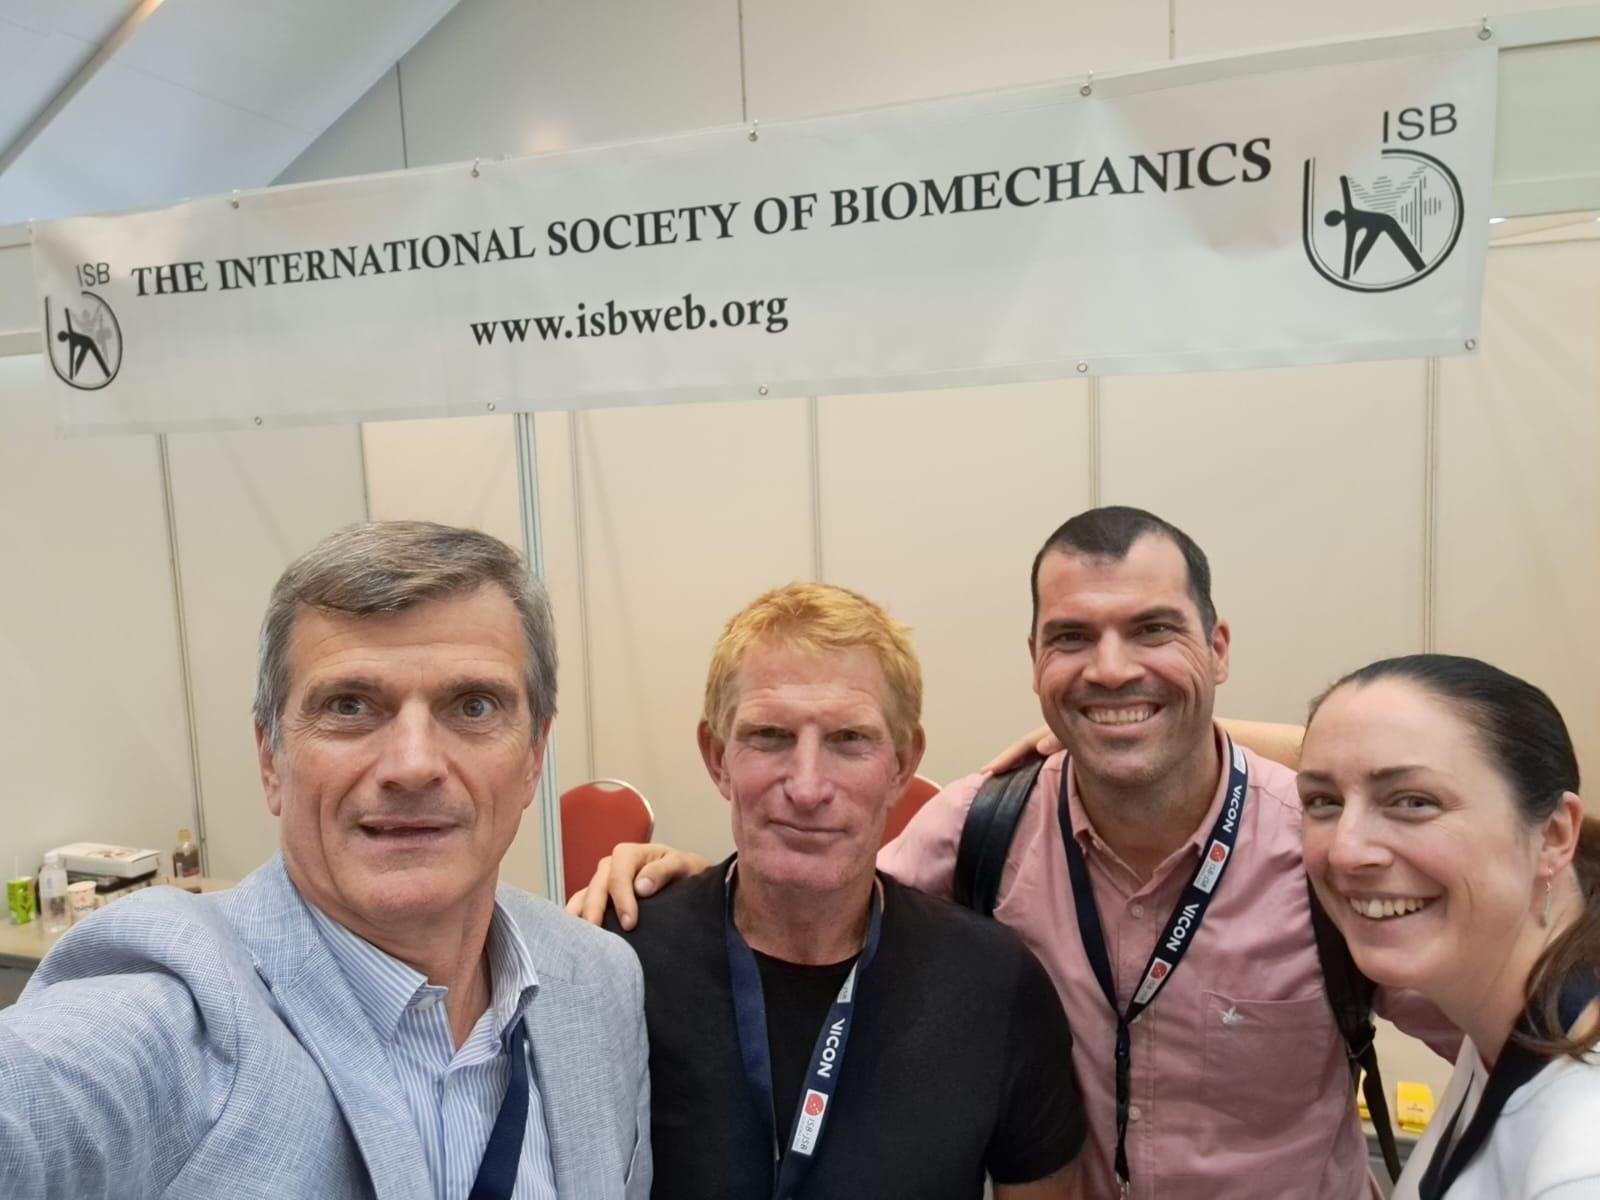 Felipe Carpes (terceiro da esquerda para a direita) junto aos dirigentes da Sociedade Internacional de Biomecânica - Divulgação